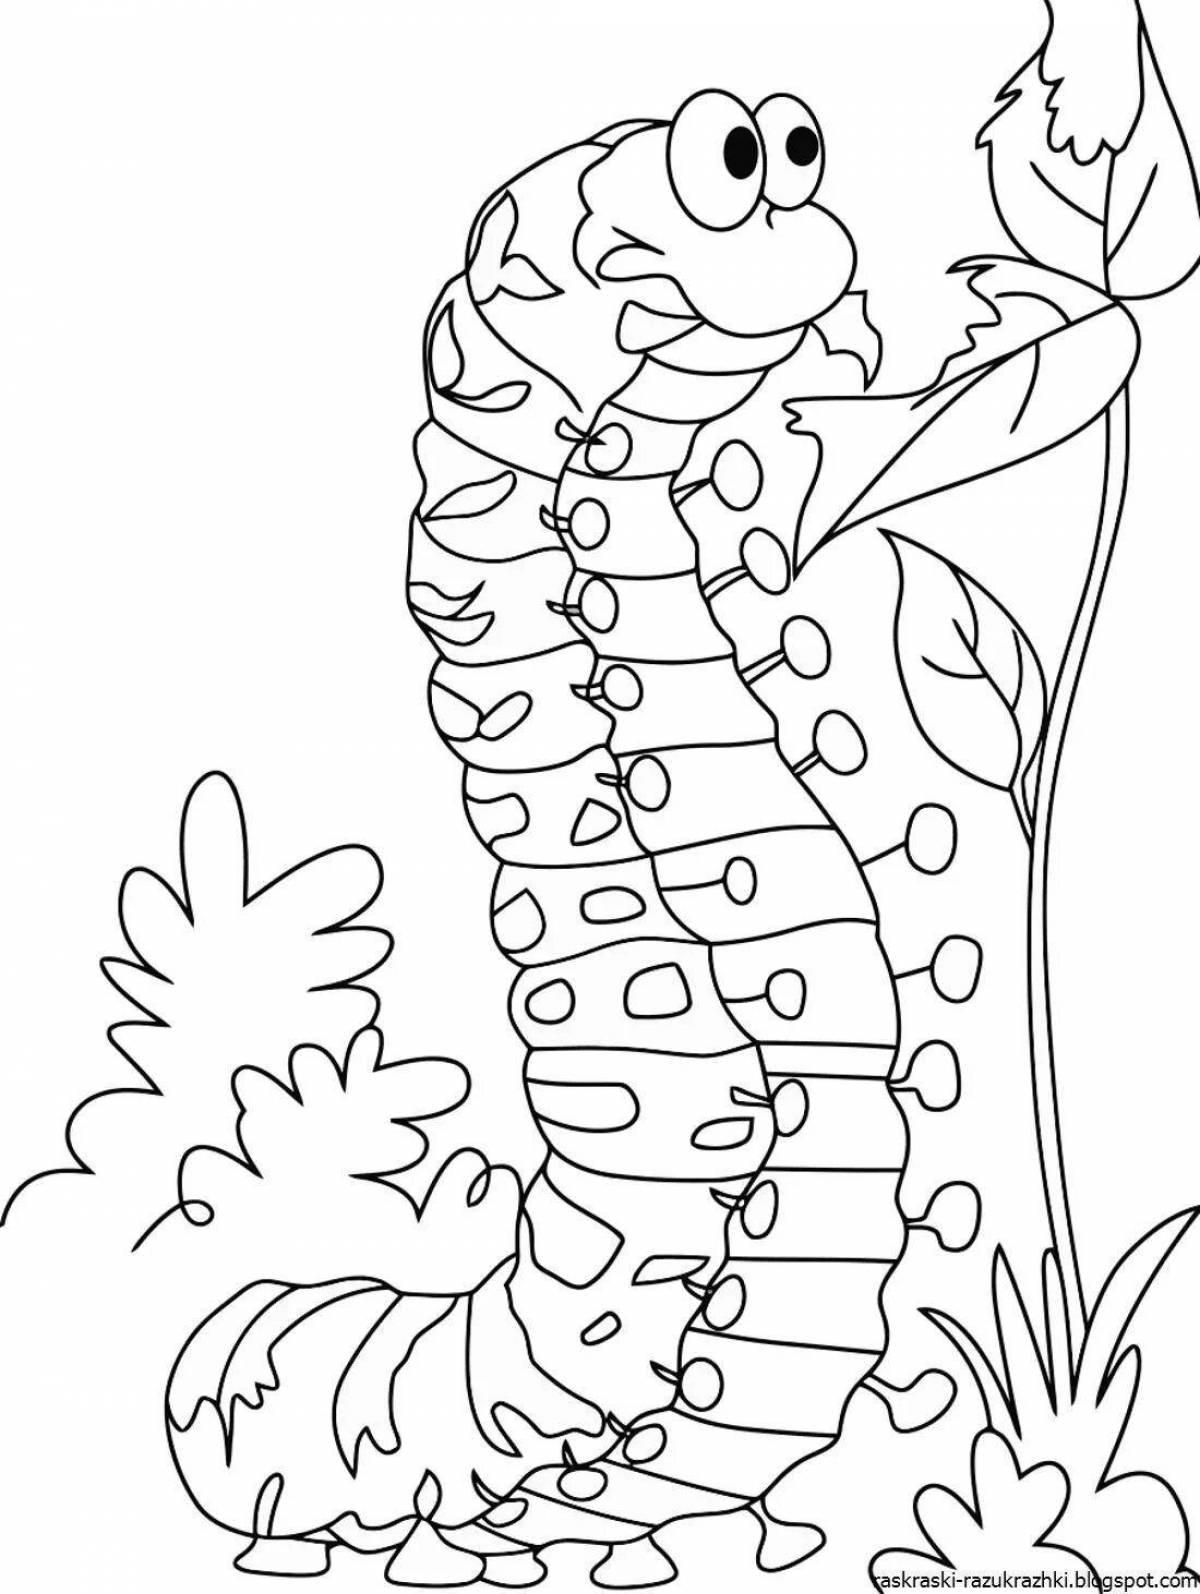 Coloring cute caterpillar for kids